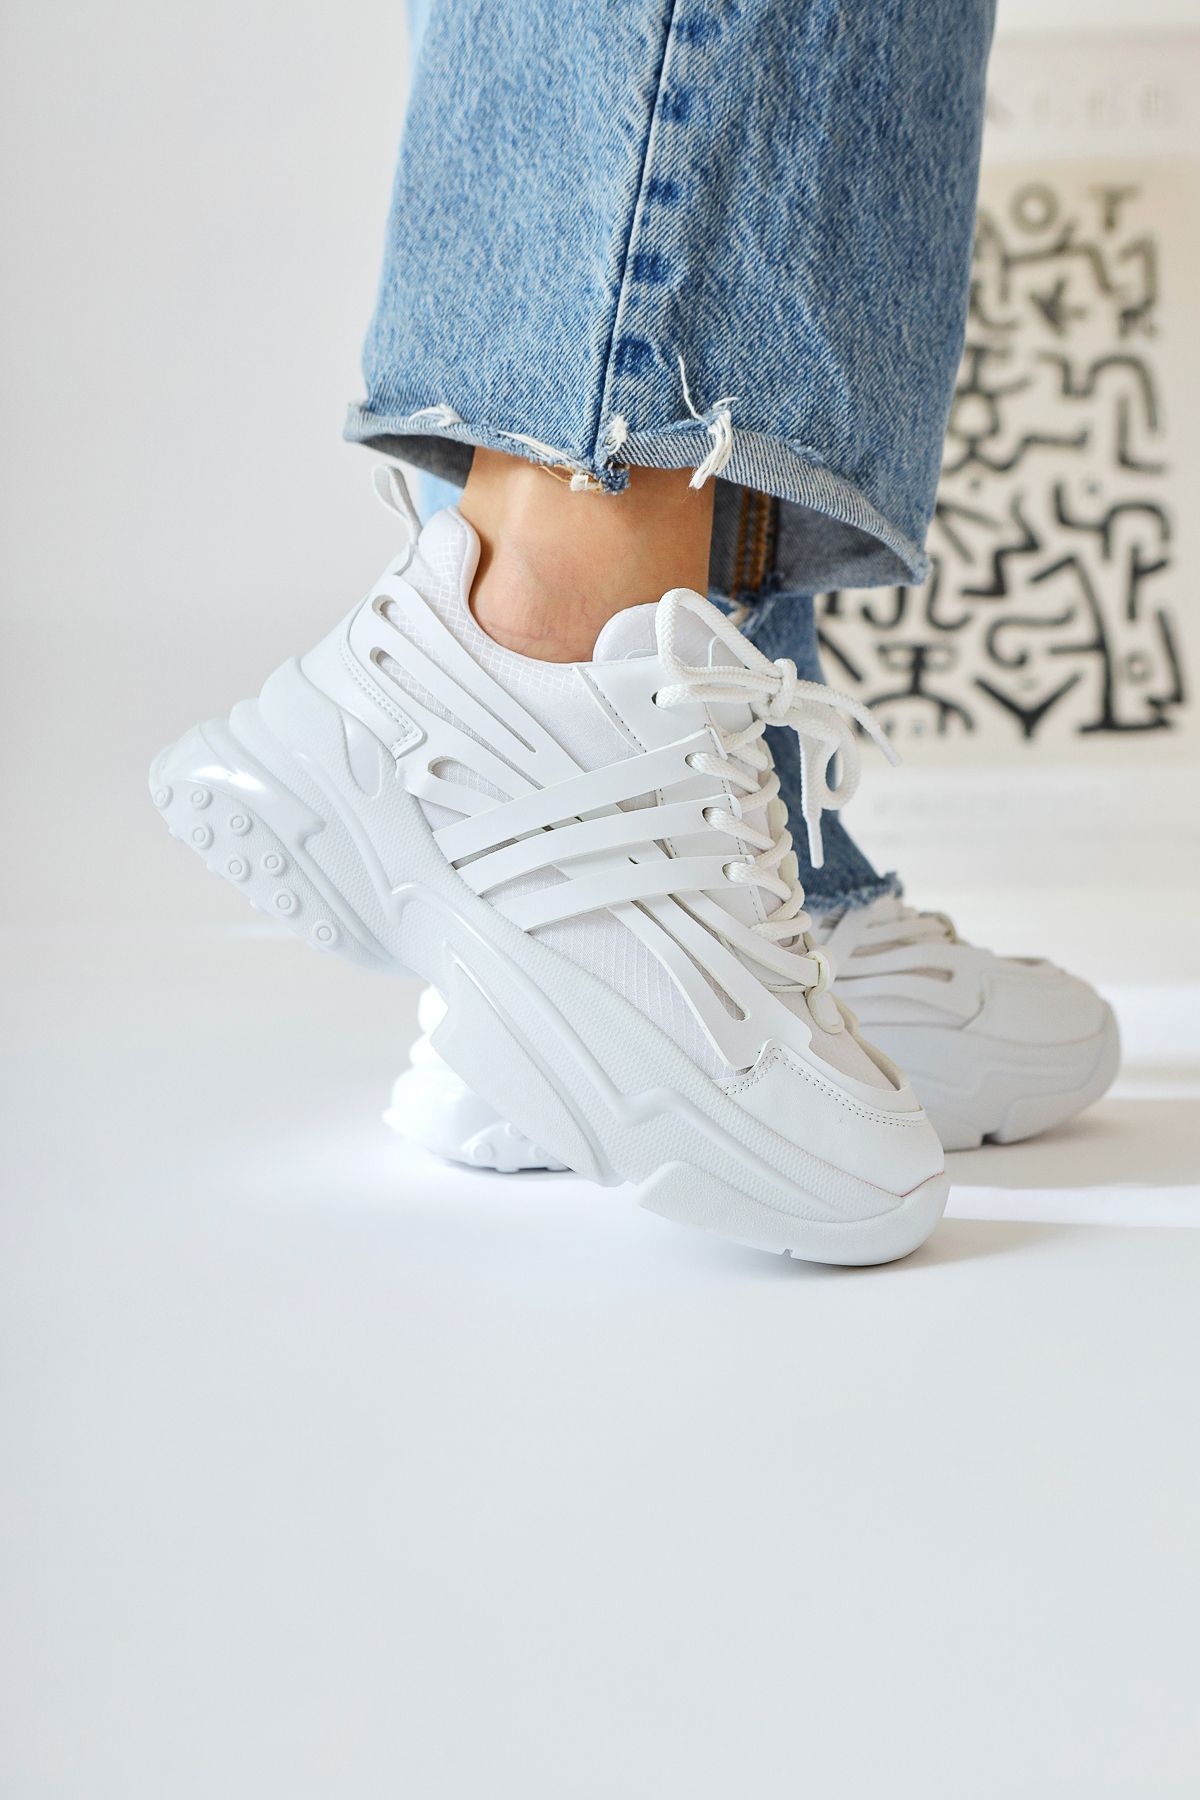 Limoya Eddy Beyaz Asimetrik Kesim Deri Detaylı Paraşür Kumaş Sneakers